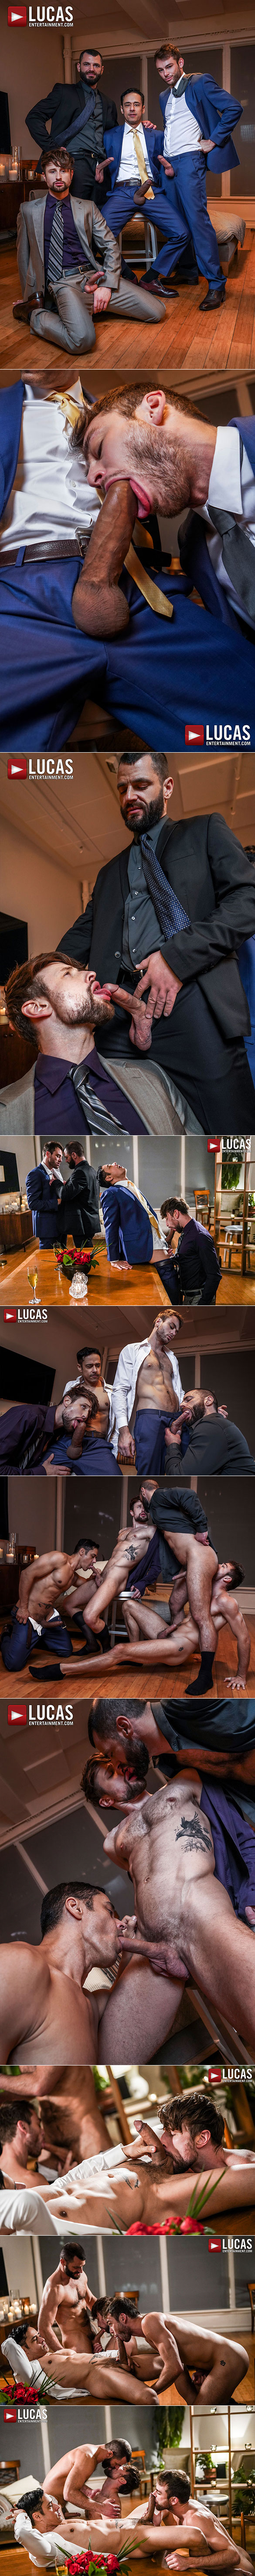 Lucas Entertainment: Drew Dixon, Jake Morgan, Max Adonis and Rafael Alencar in "Gentlemen 26: Long, Hard Hours"